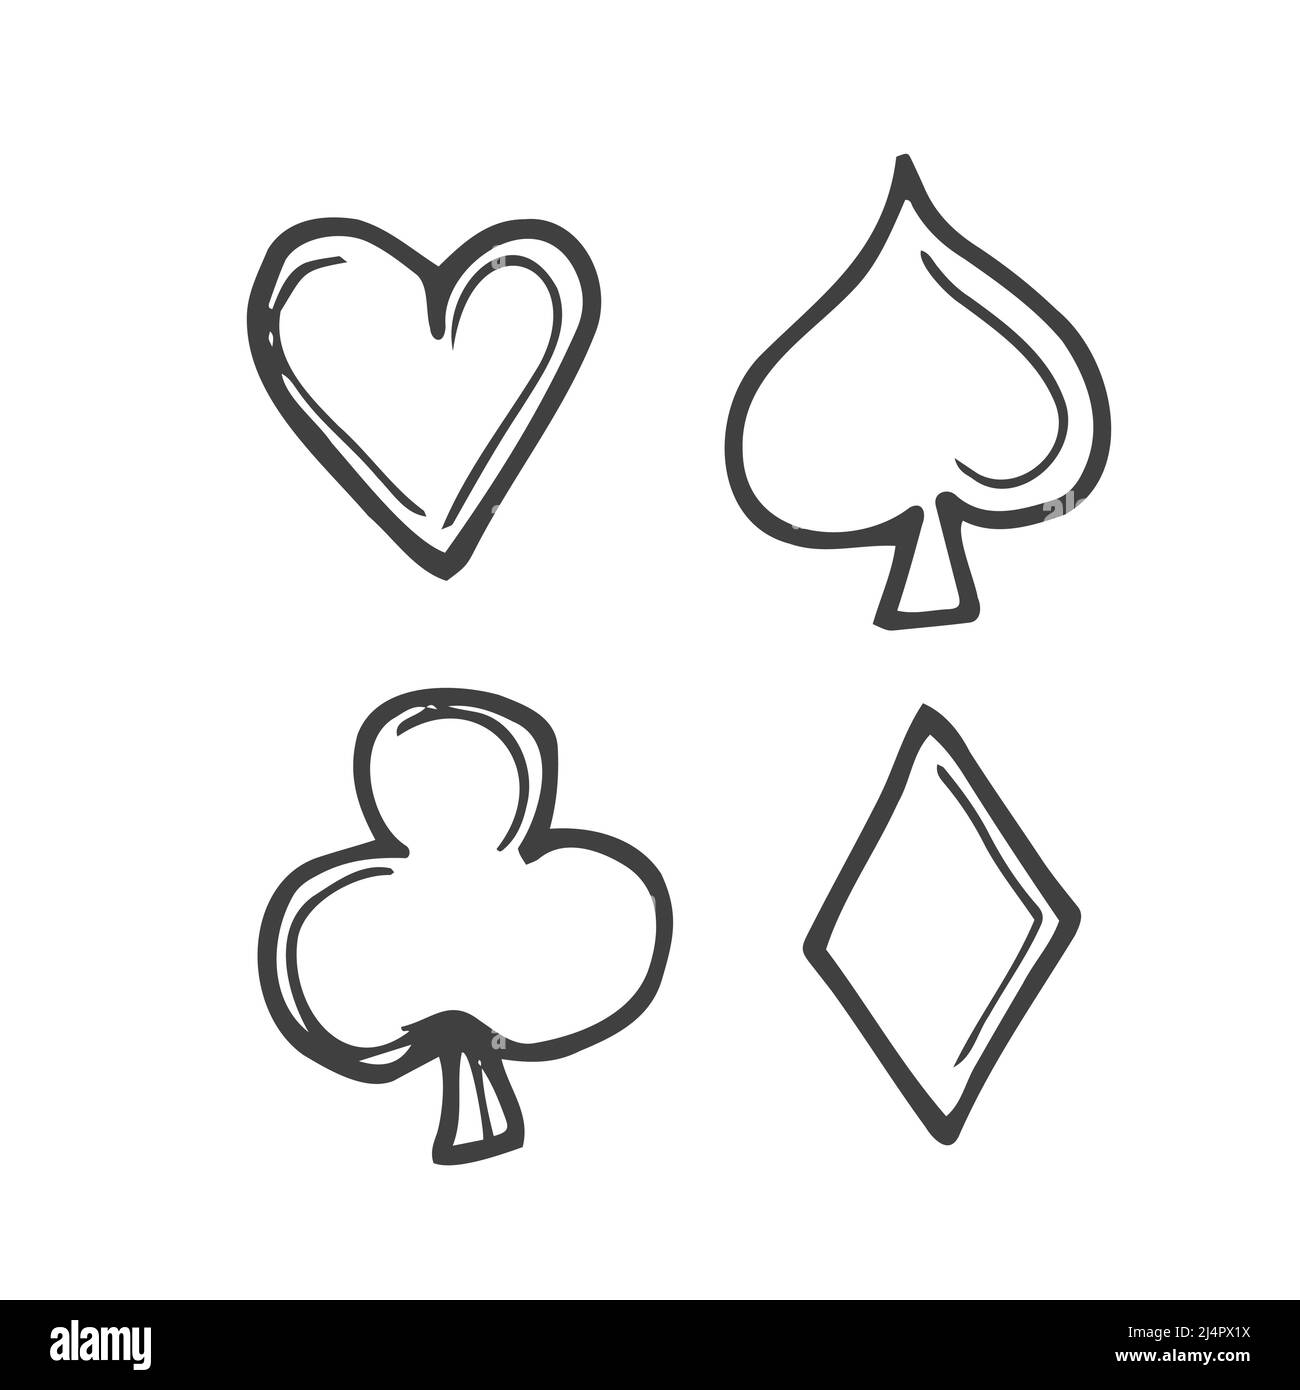 Simbolos de poker Imágenes de stock en blanco y negro - Alamy